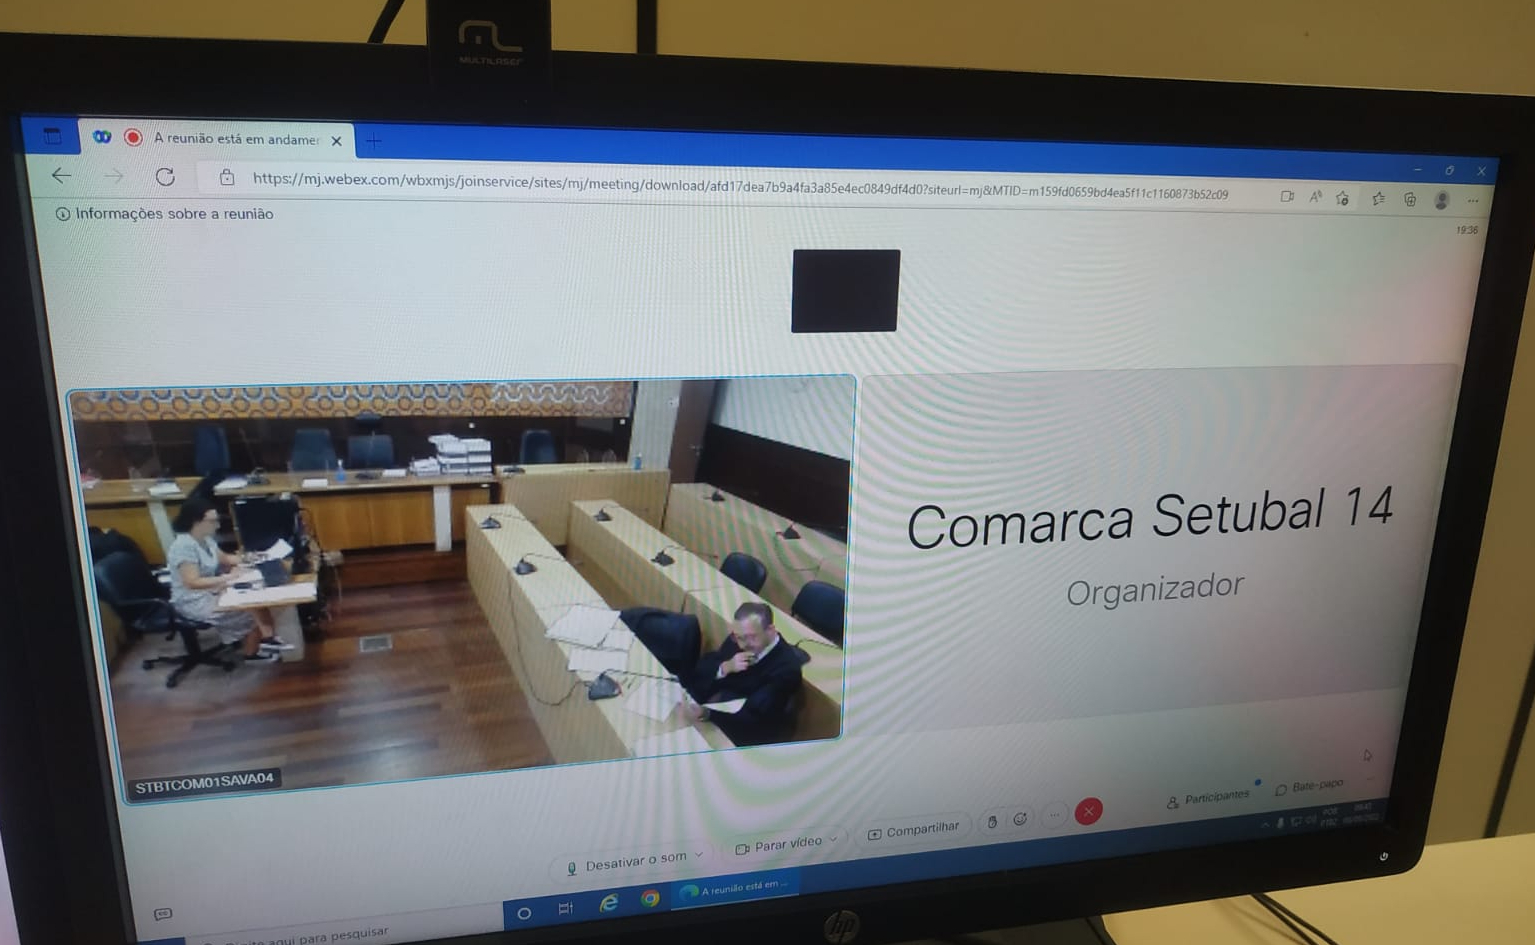 Foto da tela do computador durante audiência virtual realizada entre o Fórum de Petrópolis e o Tribunal Judicial de Setúbal